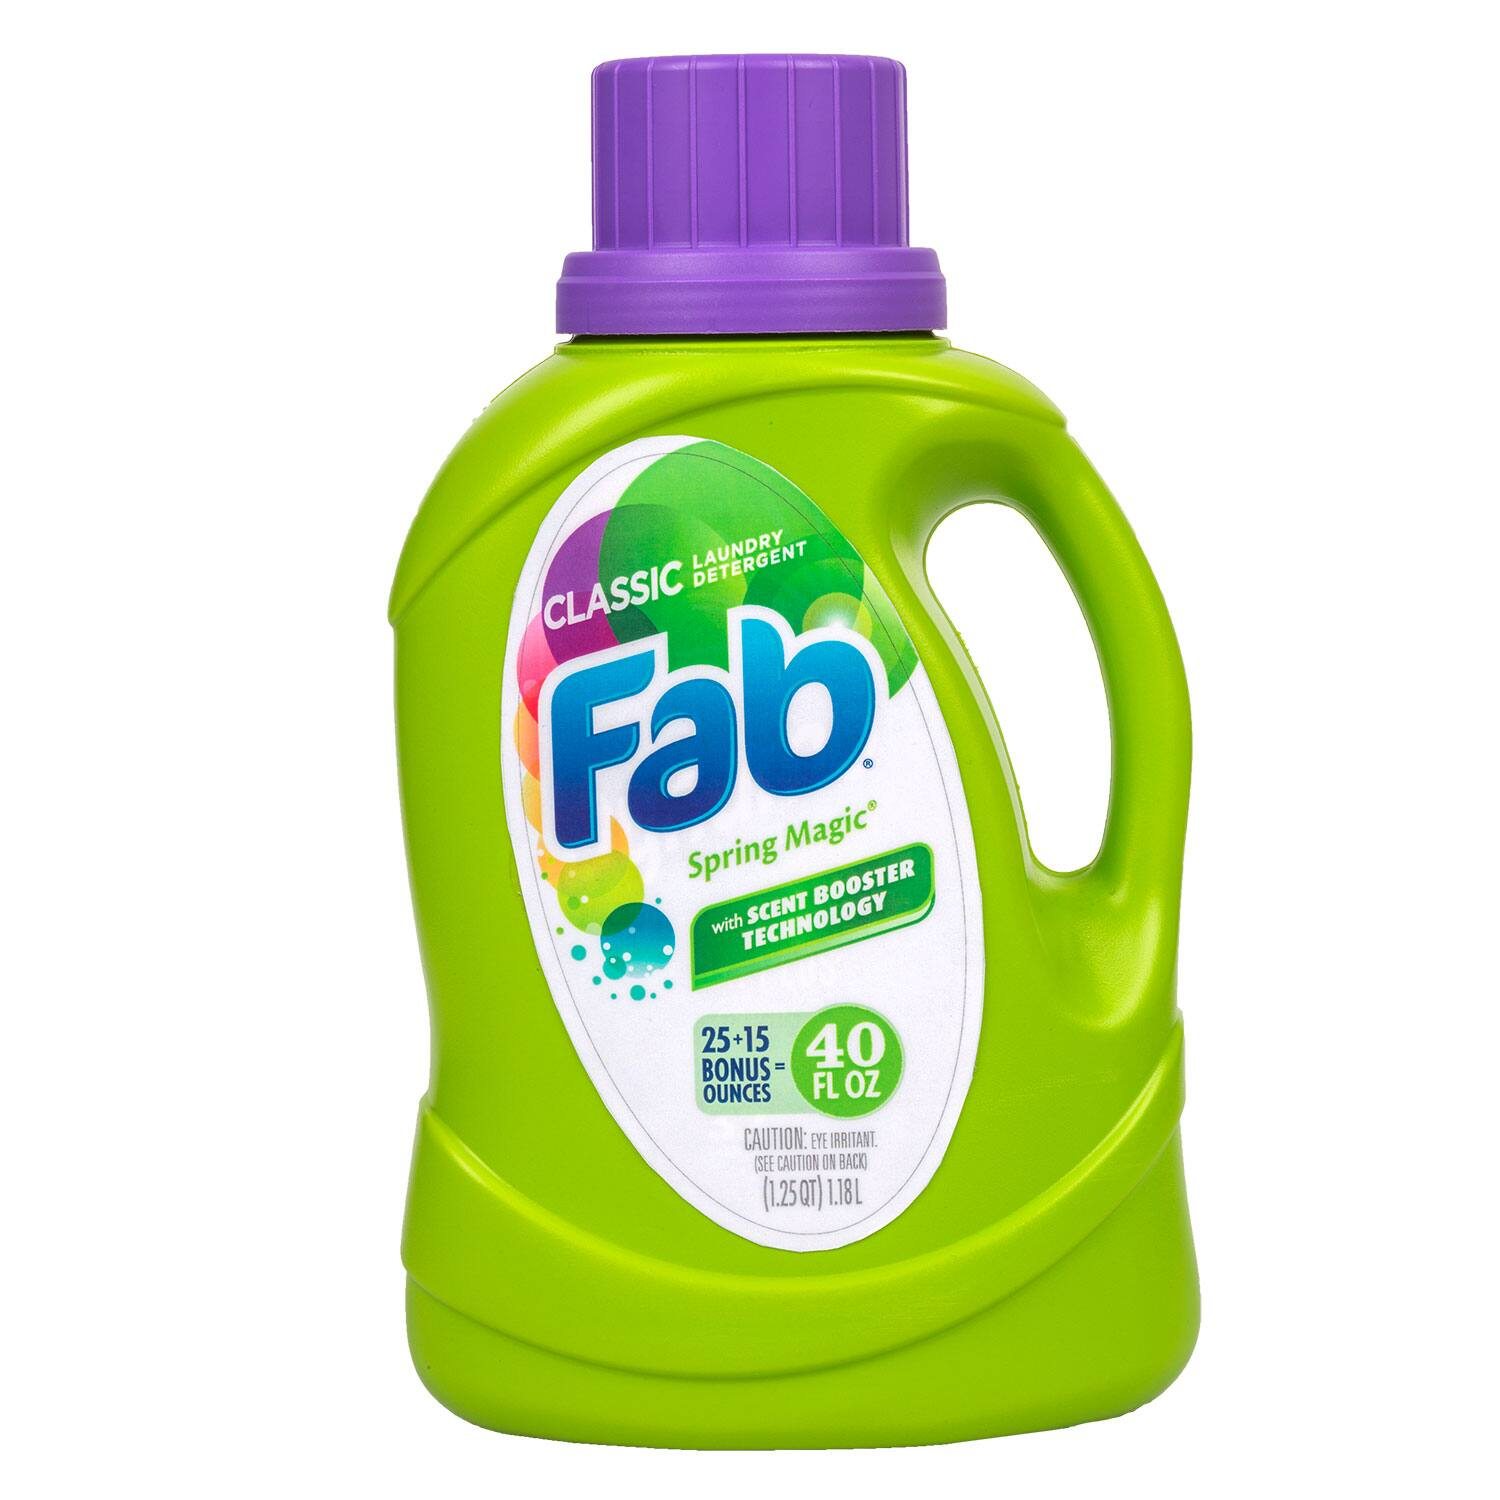 Fab Spring Magic Liquid Laundry Detergent, 40-oz. Bonus Bottles